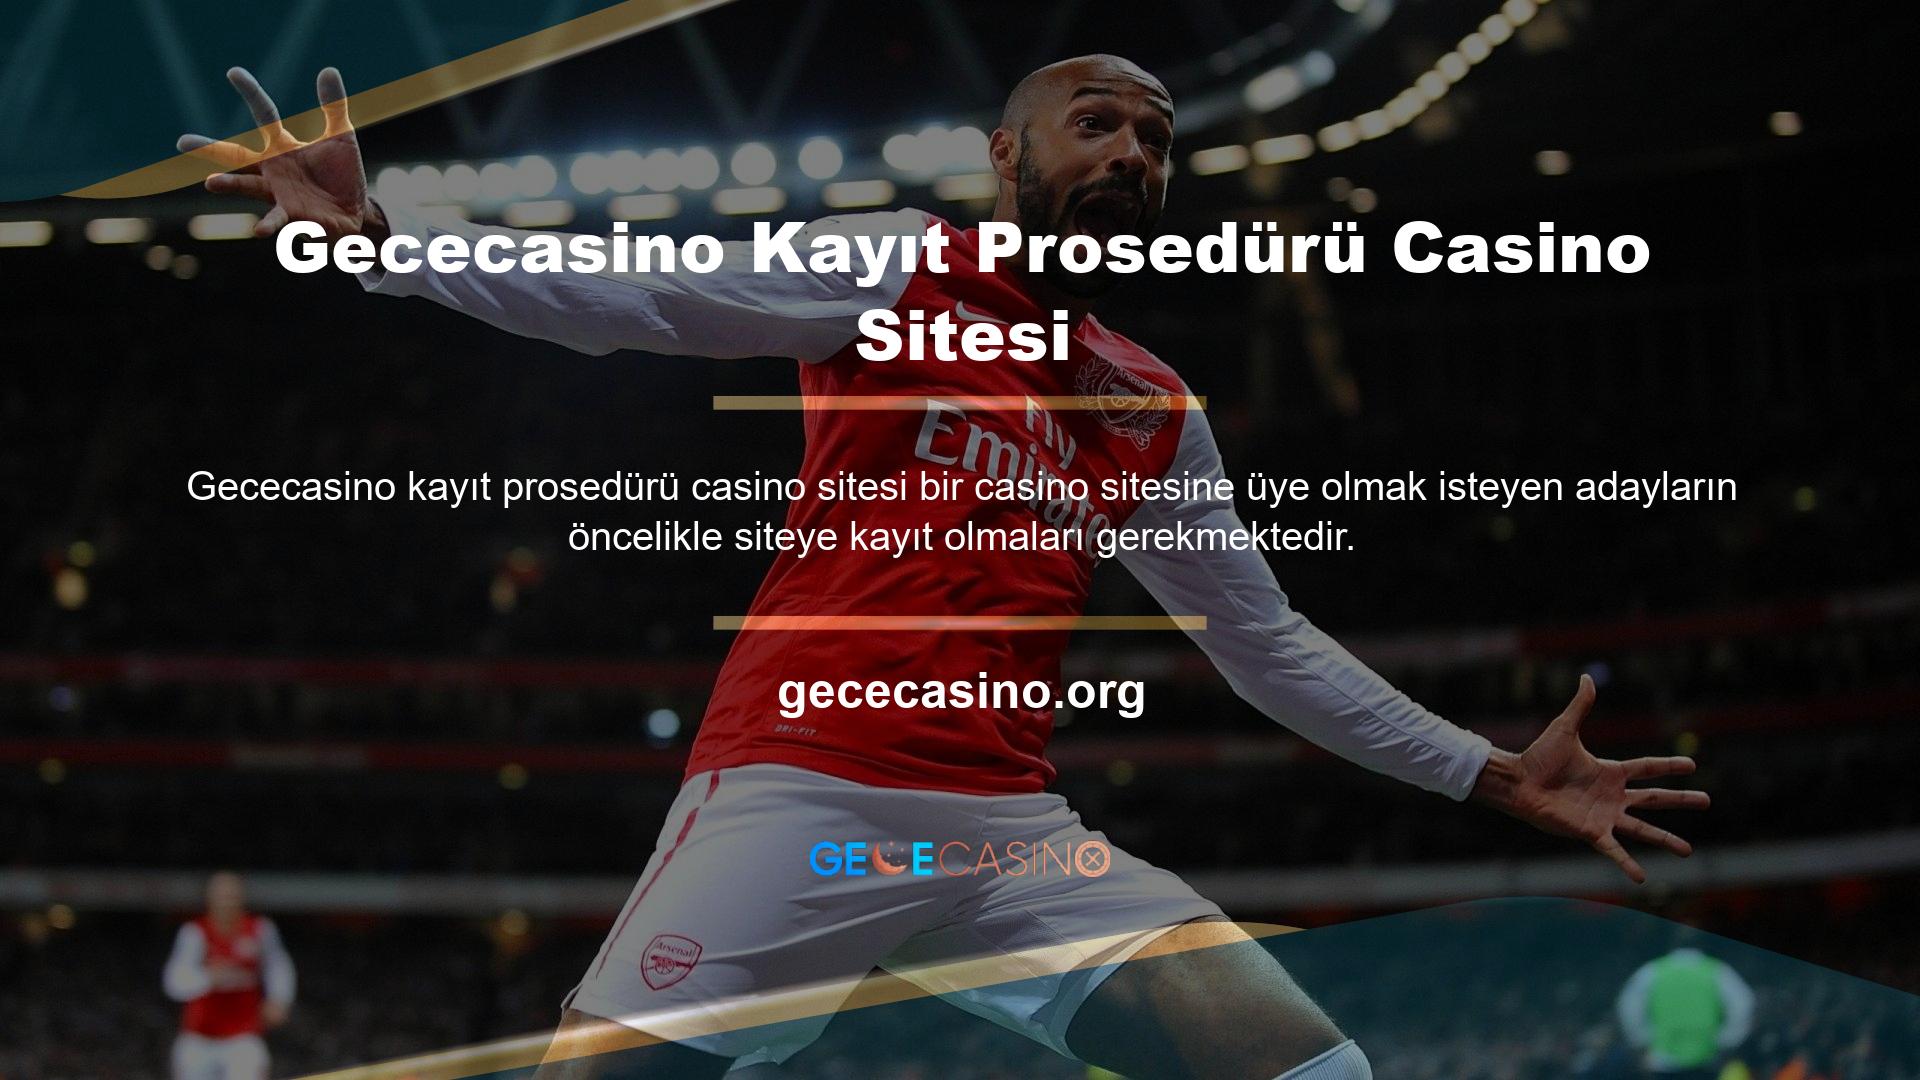 Casino tutkunları Gececasino resmi web sitesi hesapları ile en iyi güvenlik garantisine sahip olabilirler